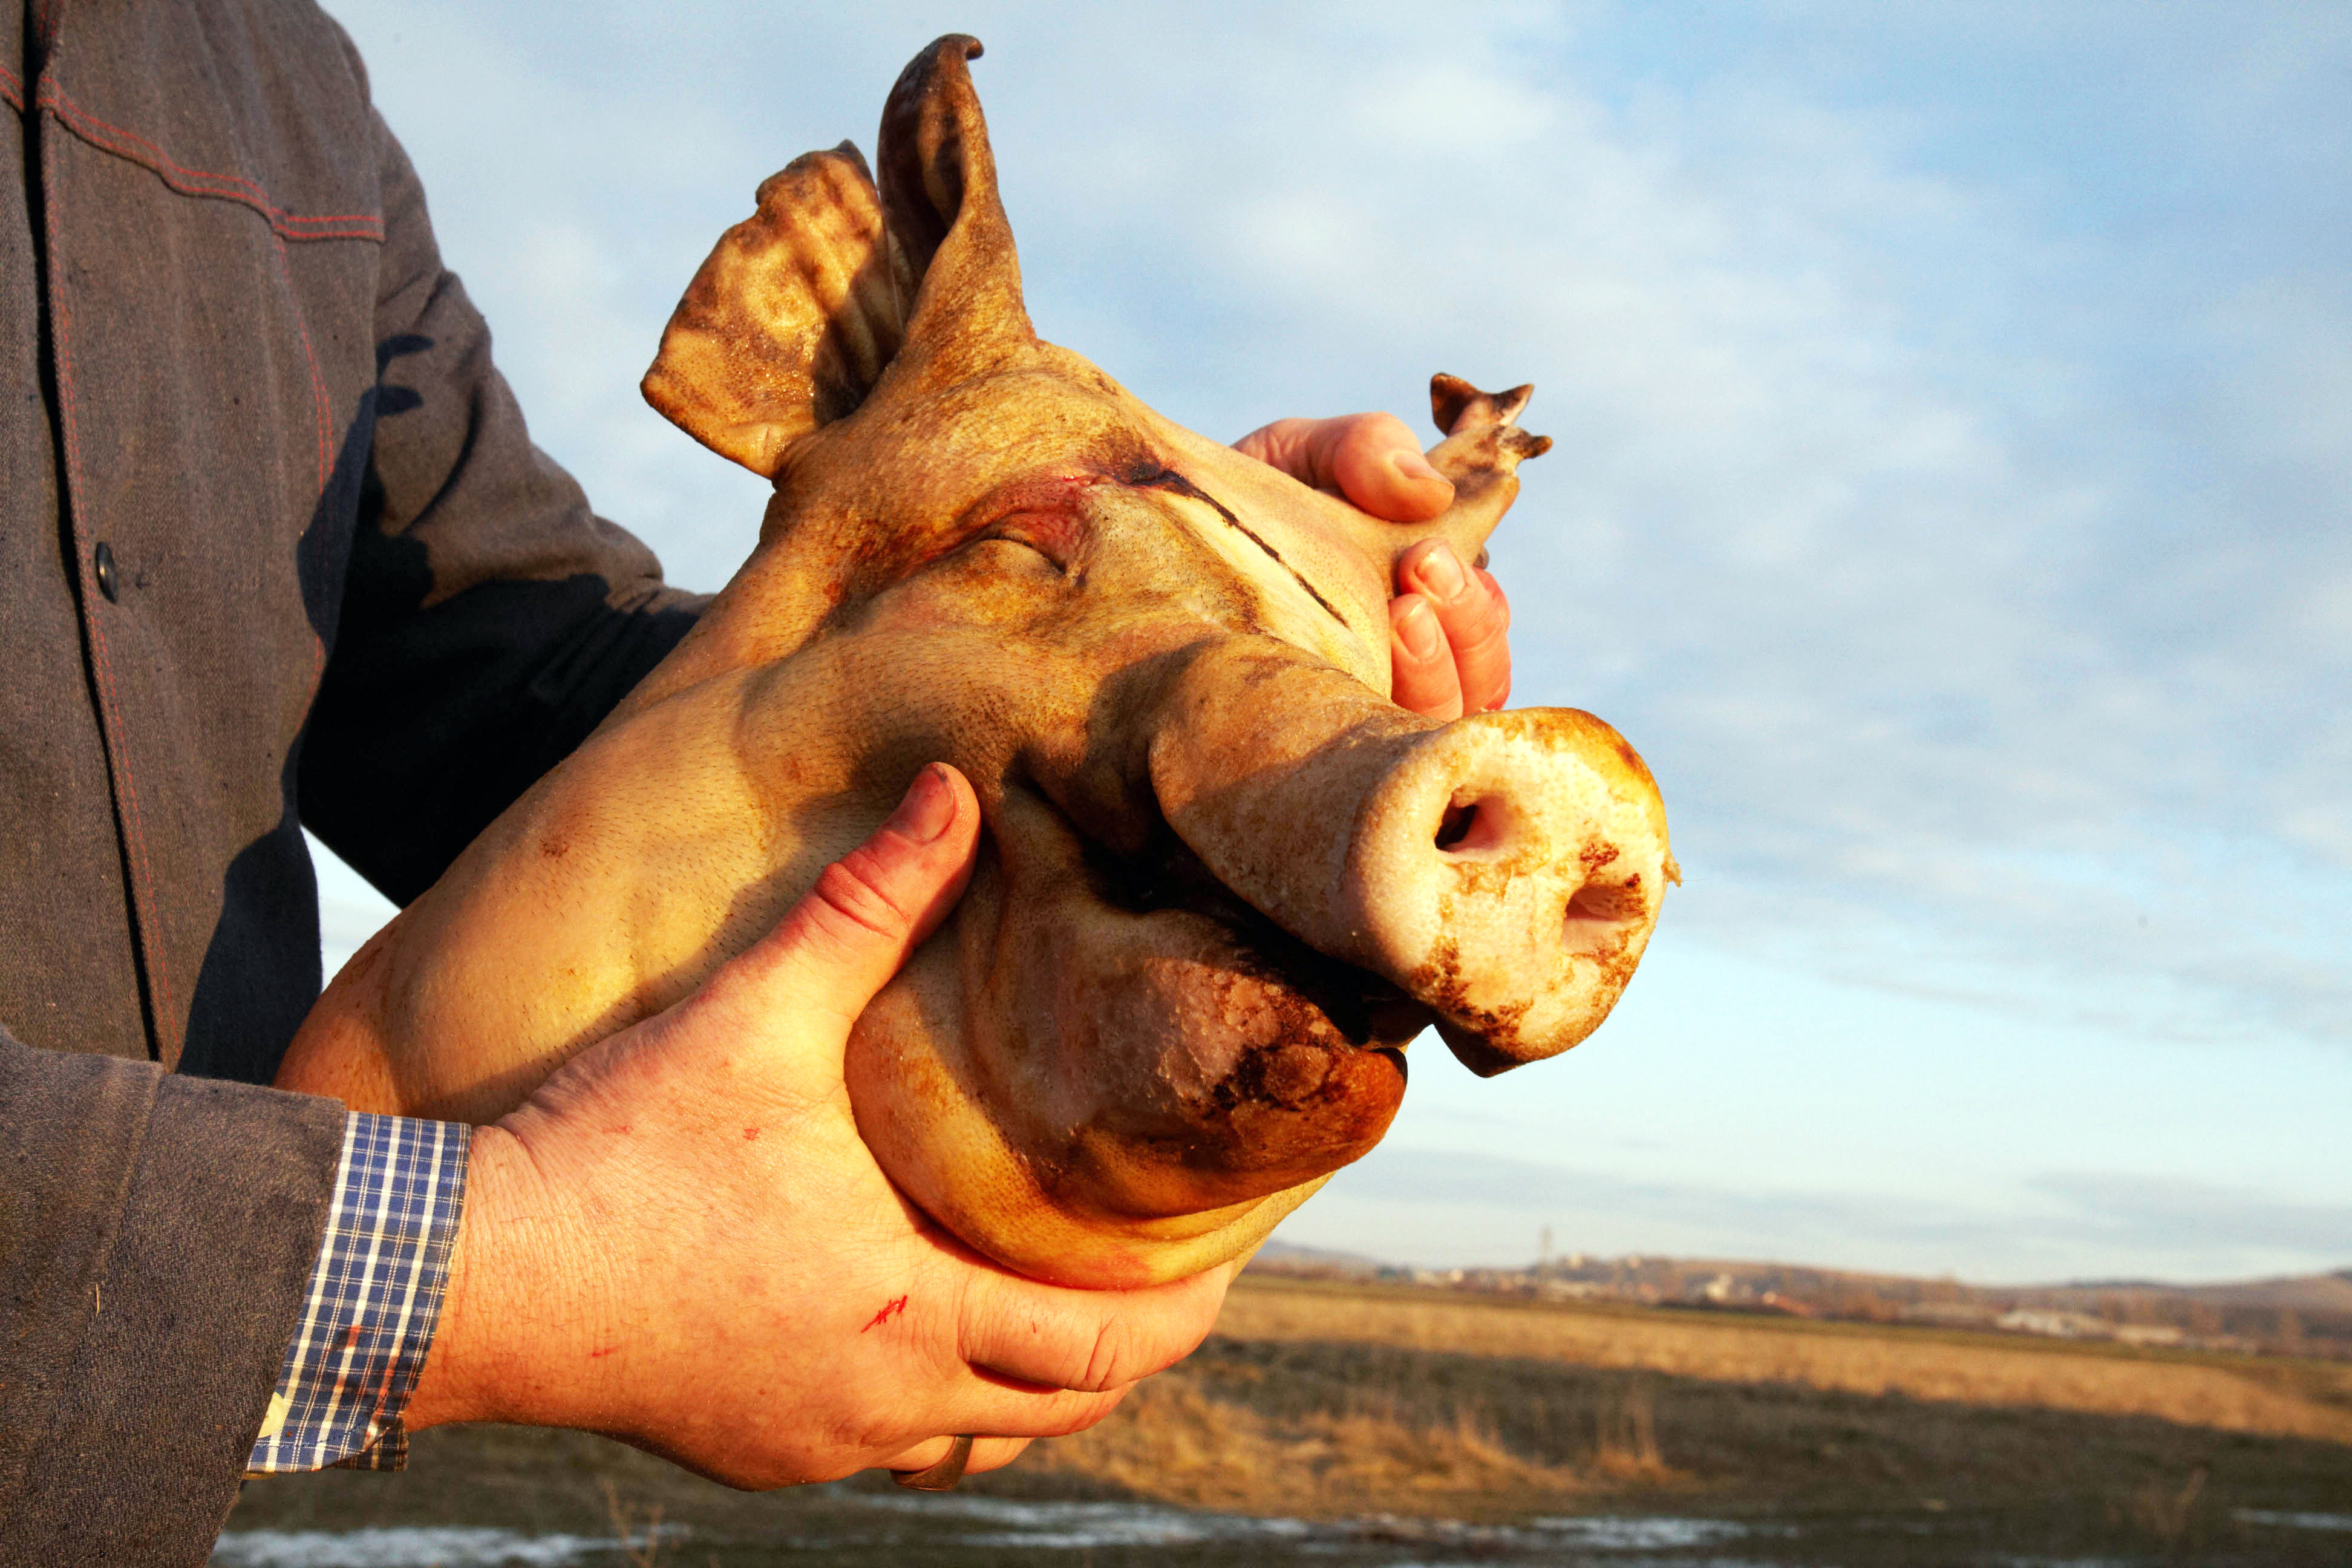 Bad Oldesloe: Schweinskopf vor Haus von Muslim abgelegt – Staatsschutz ermittelt